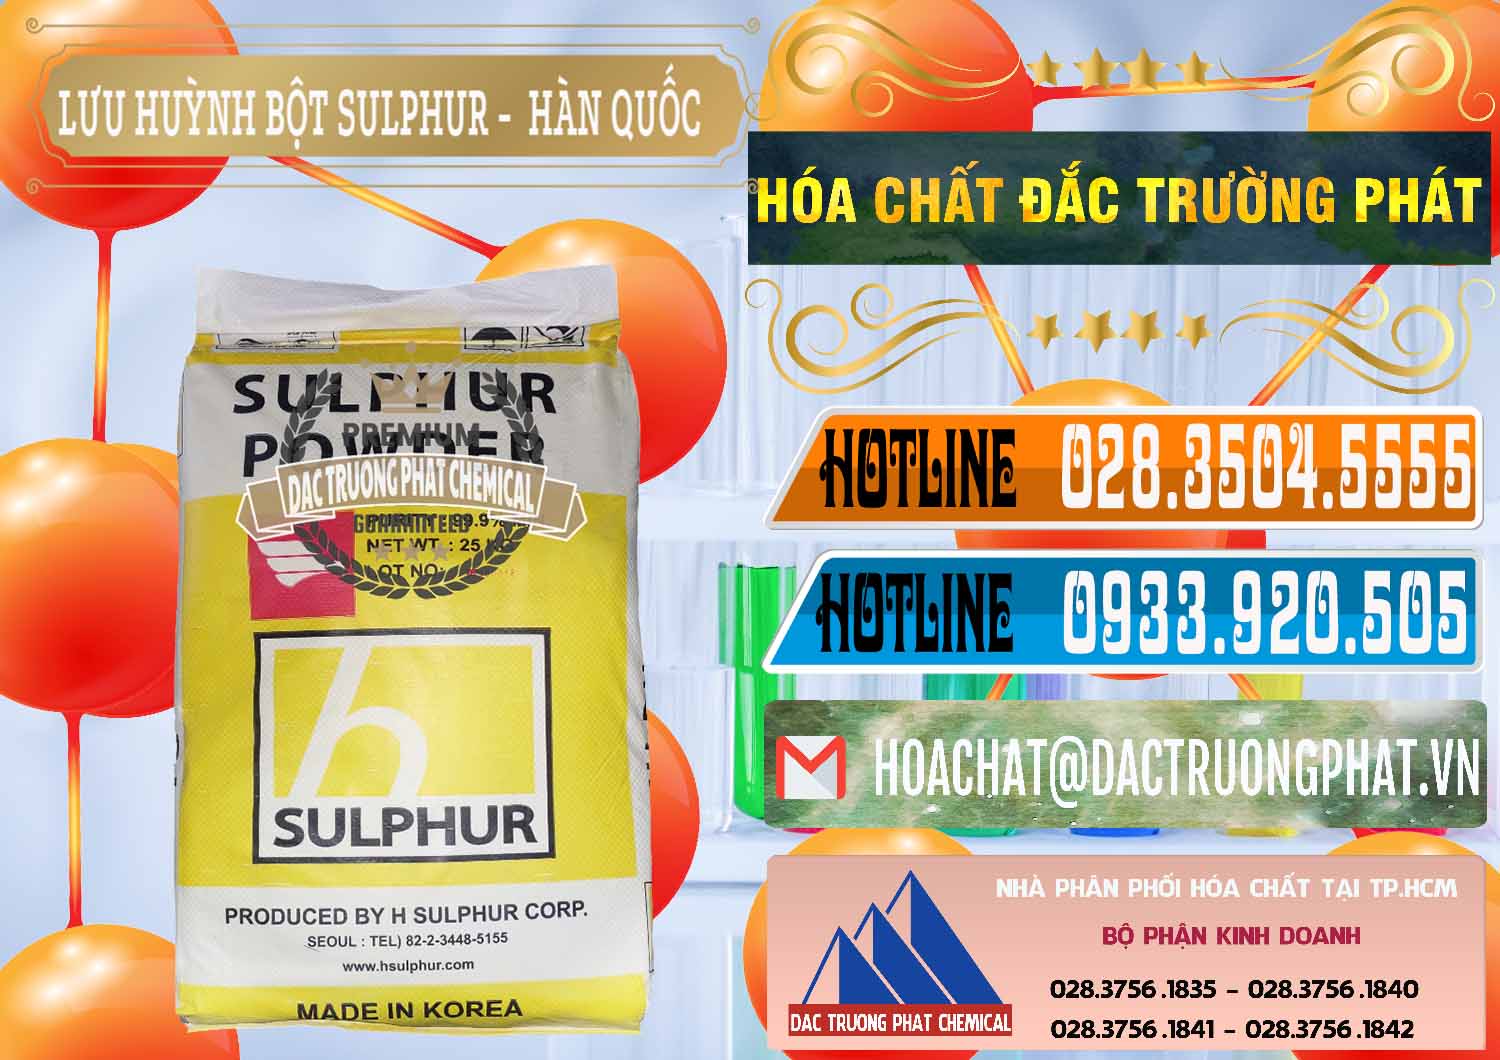 Cty bán - cung ứng Lưu huỳnh Bột - Sulfur Powder ( H Sulfur ) Hàn Quốc Korea - 0199 - Chuyên nhập khẩu - phân phối hóa chất tại TP.HCM - stmp.net